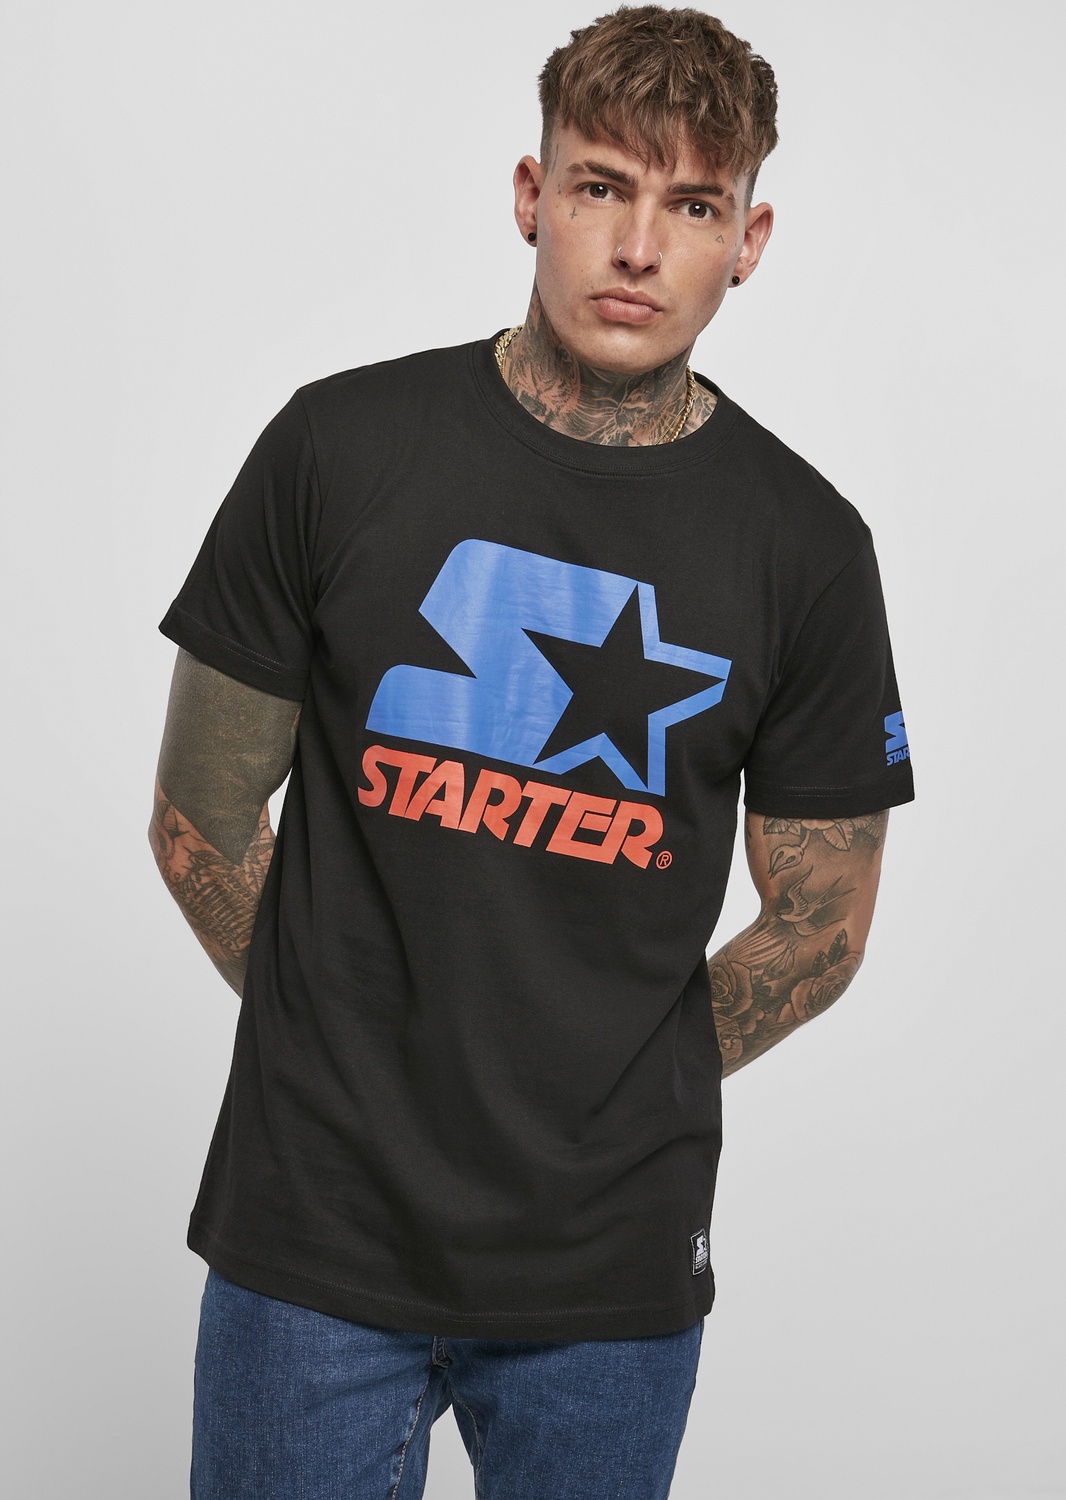 STARTER, Shirts